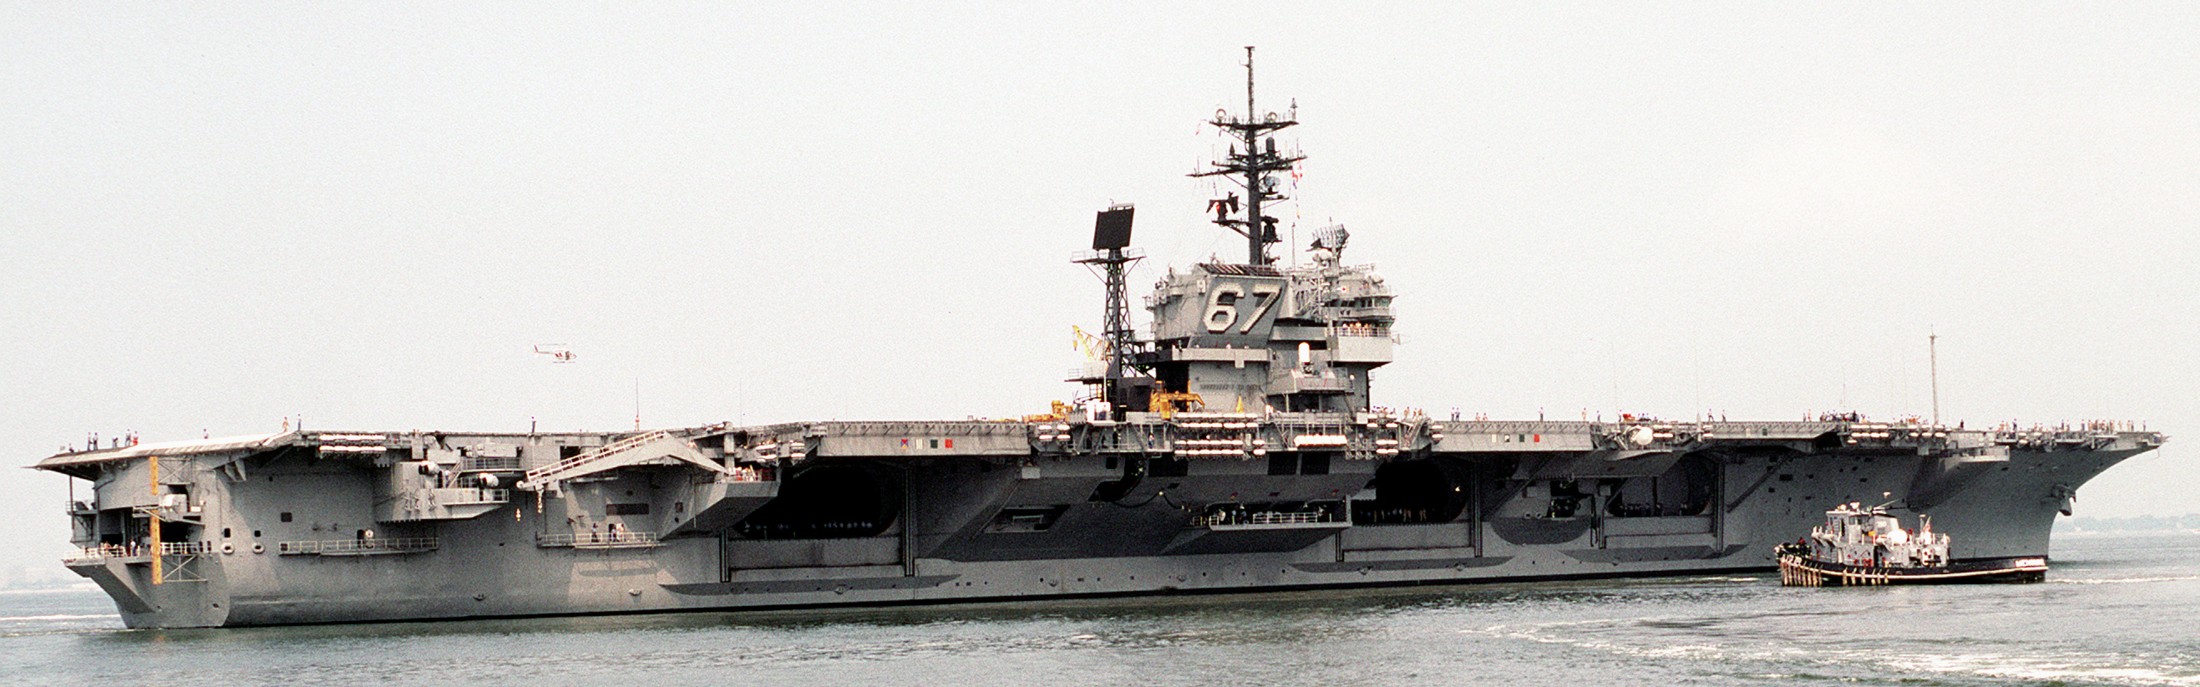 cv-67 uss john f. kennedy aircraft carrier norfolk 46